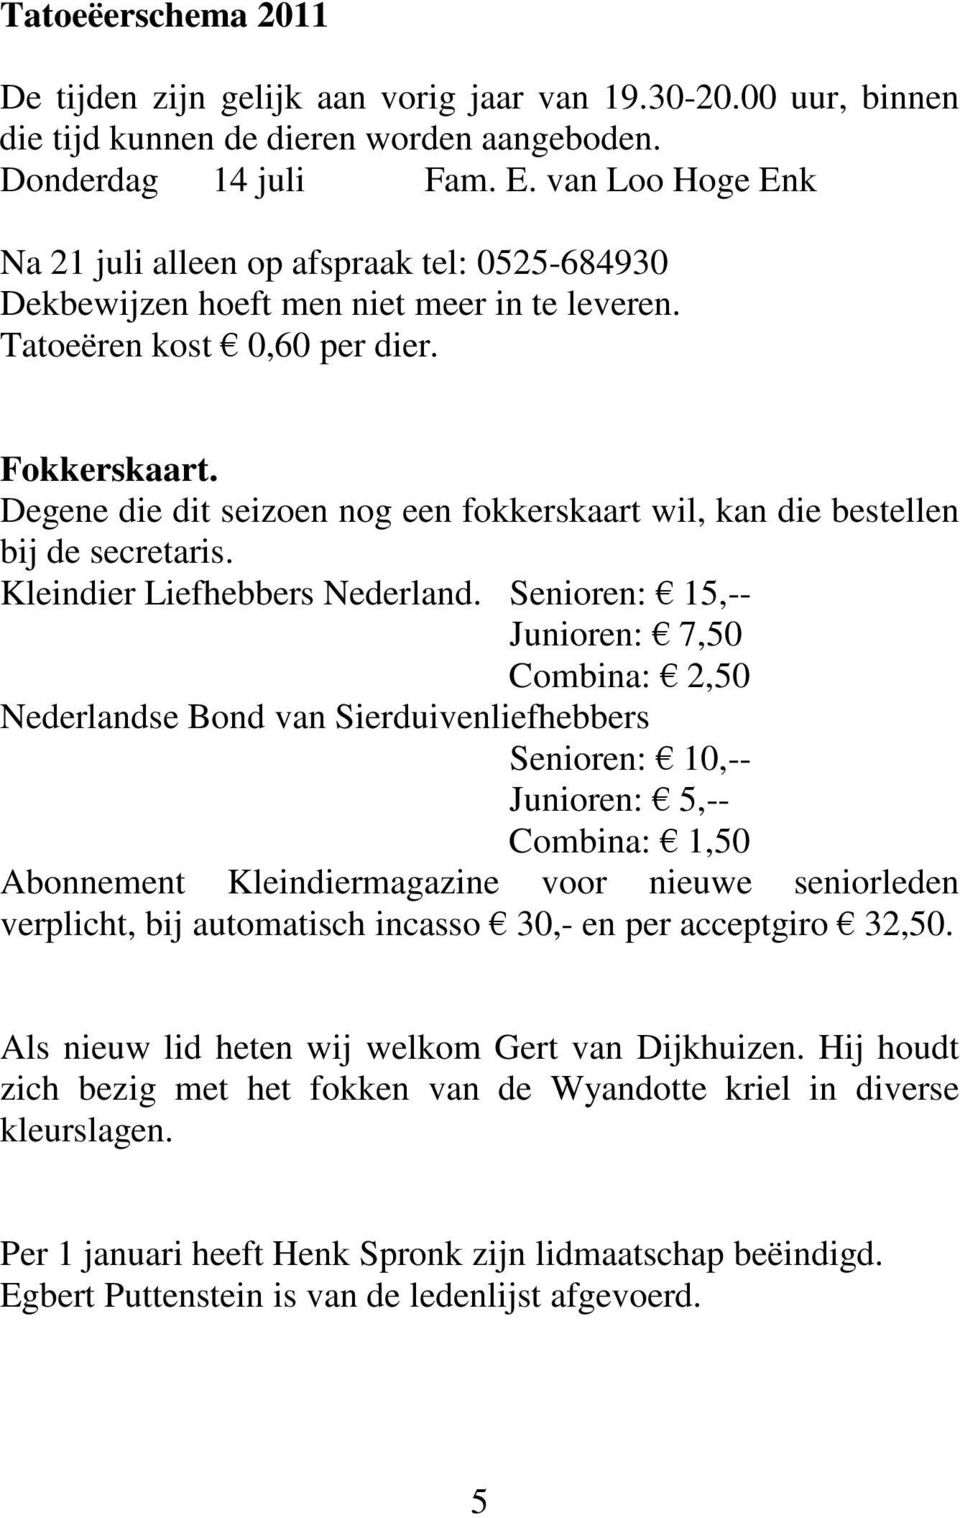 Degene die dit seizoen nog een fokkerskaart wil, kan die bestellen bij de secretaris. Kleindier Liefhebbers Nederland.